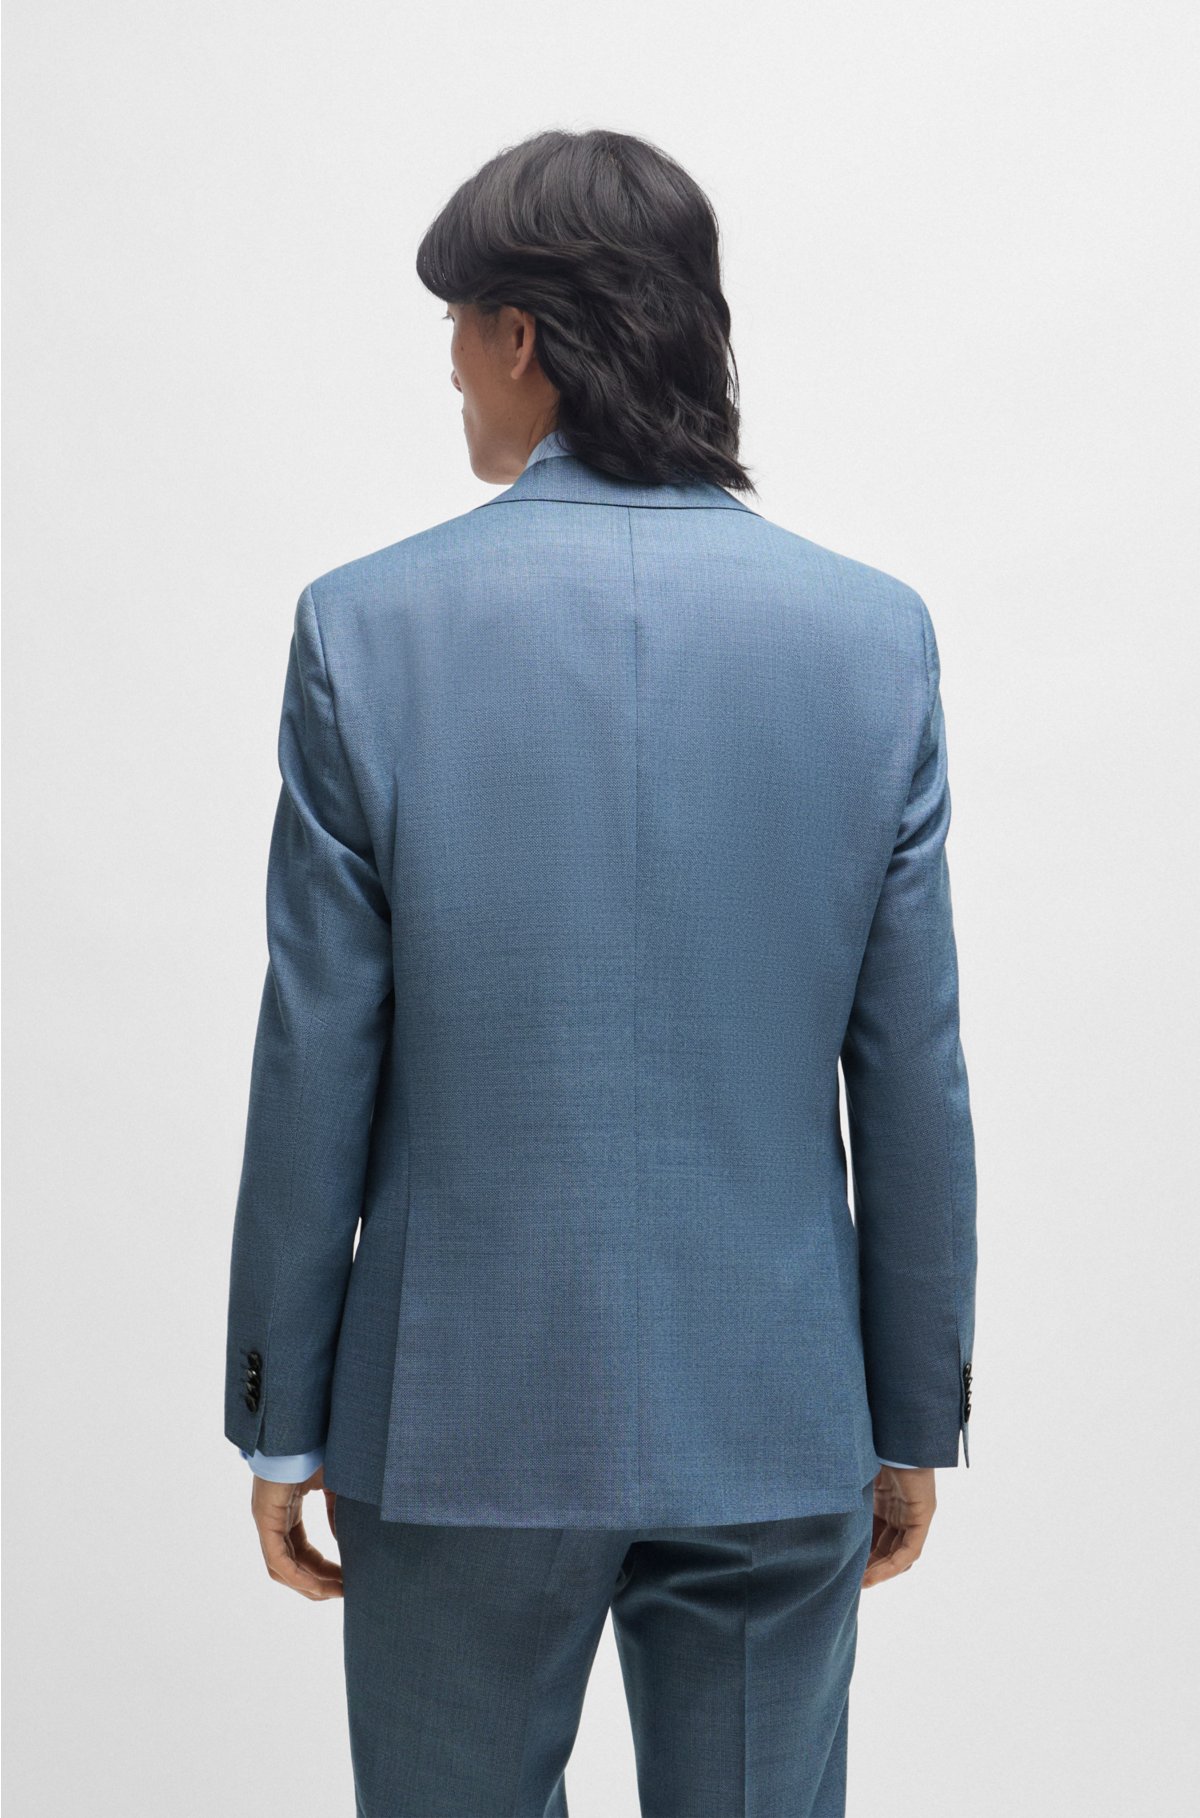 Regular-fit suit in micro-patterned virgin wool, Blue